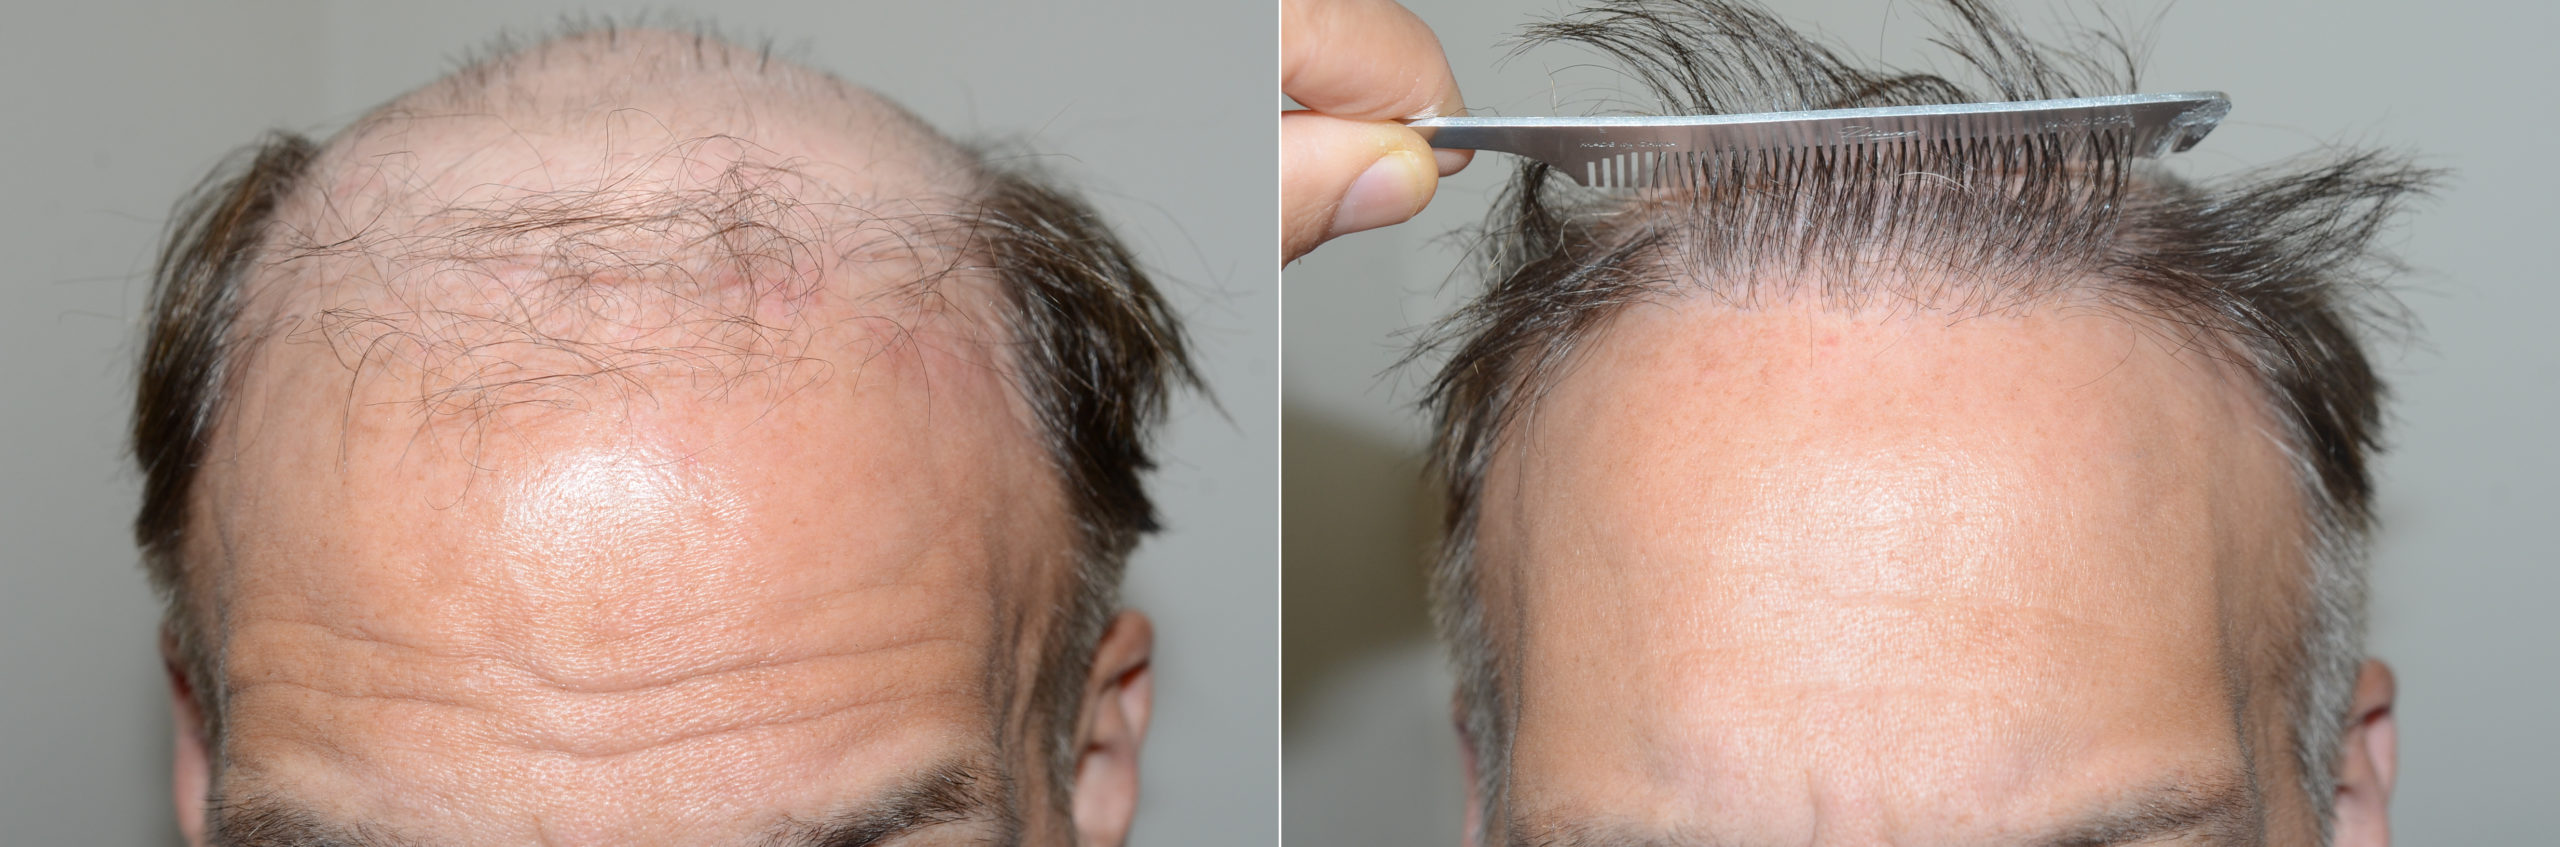 Hair Transplants for Men photos | Miami, FL | Patient123162